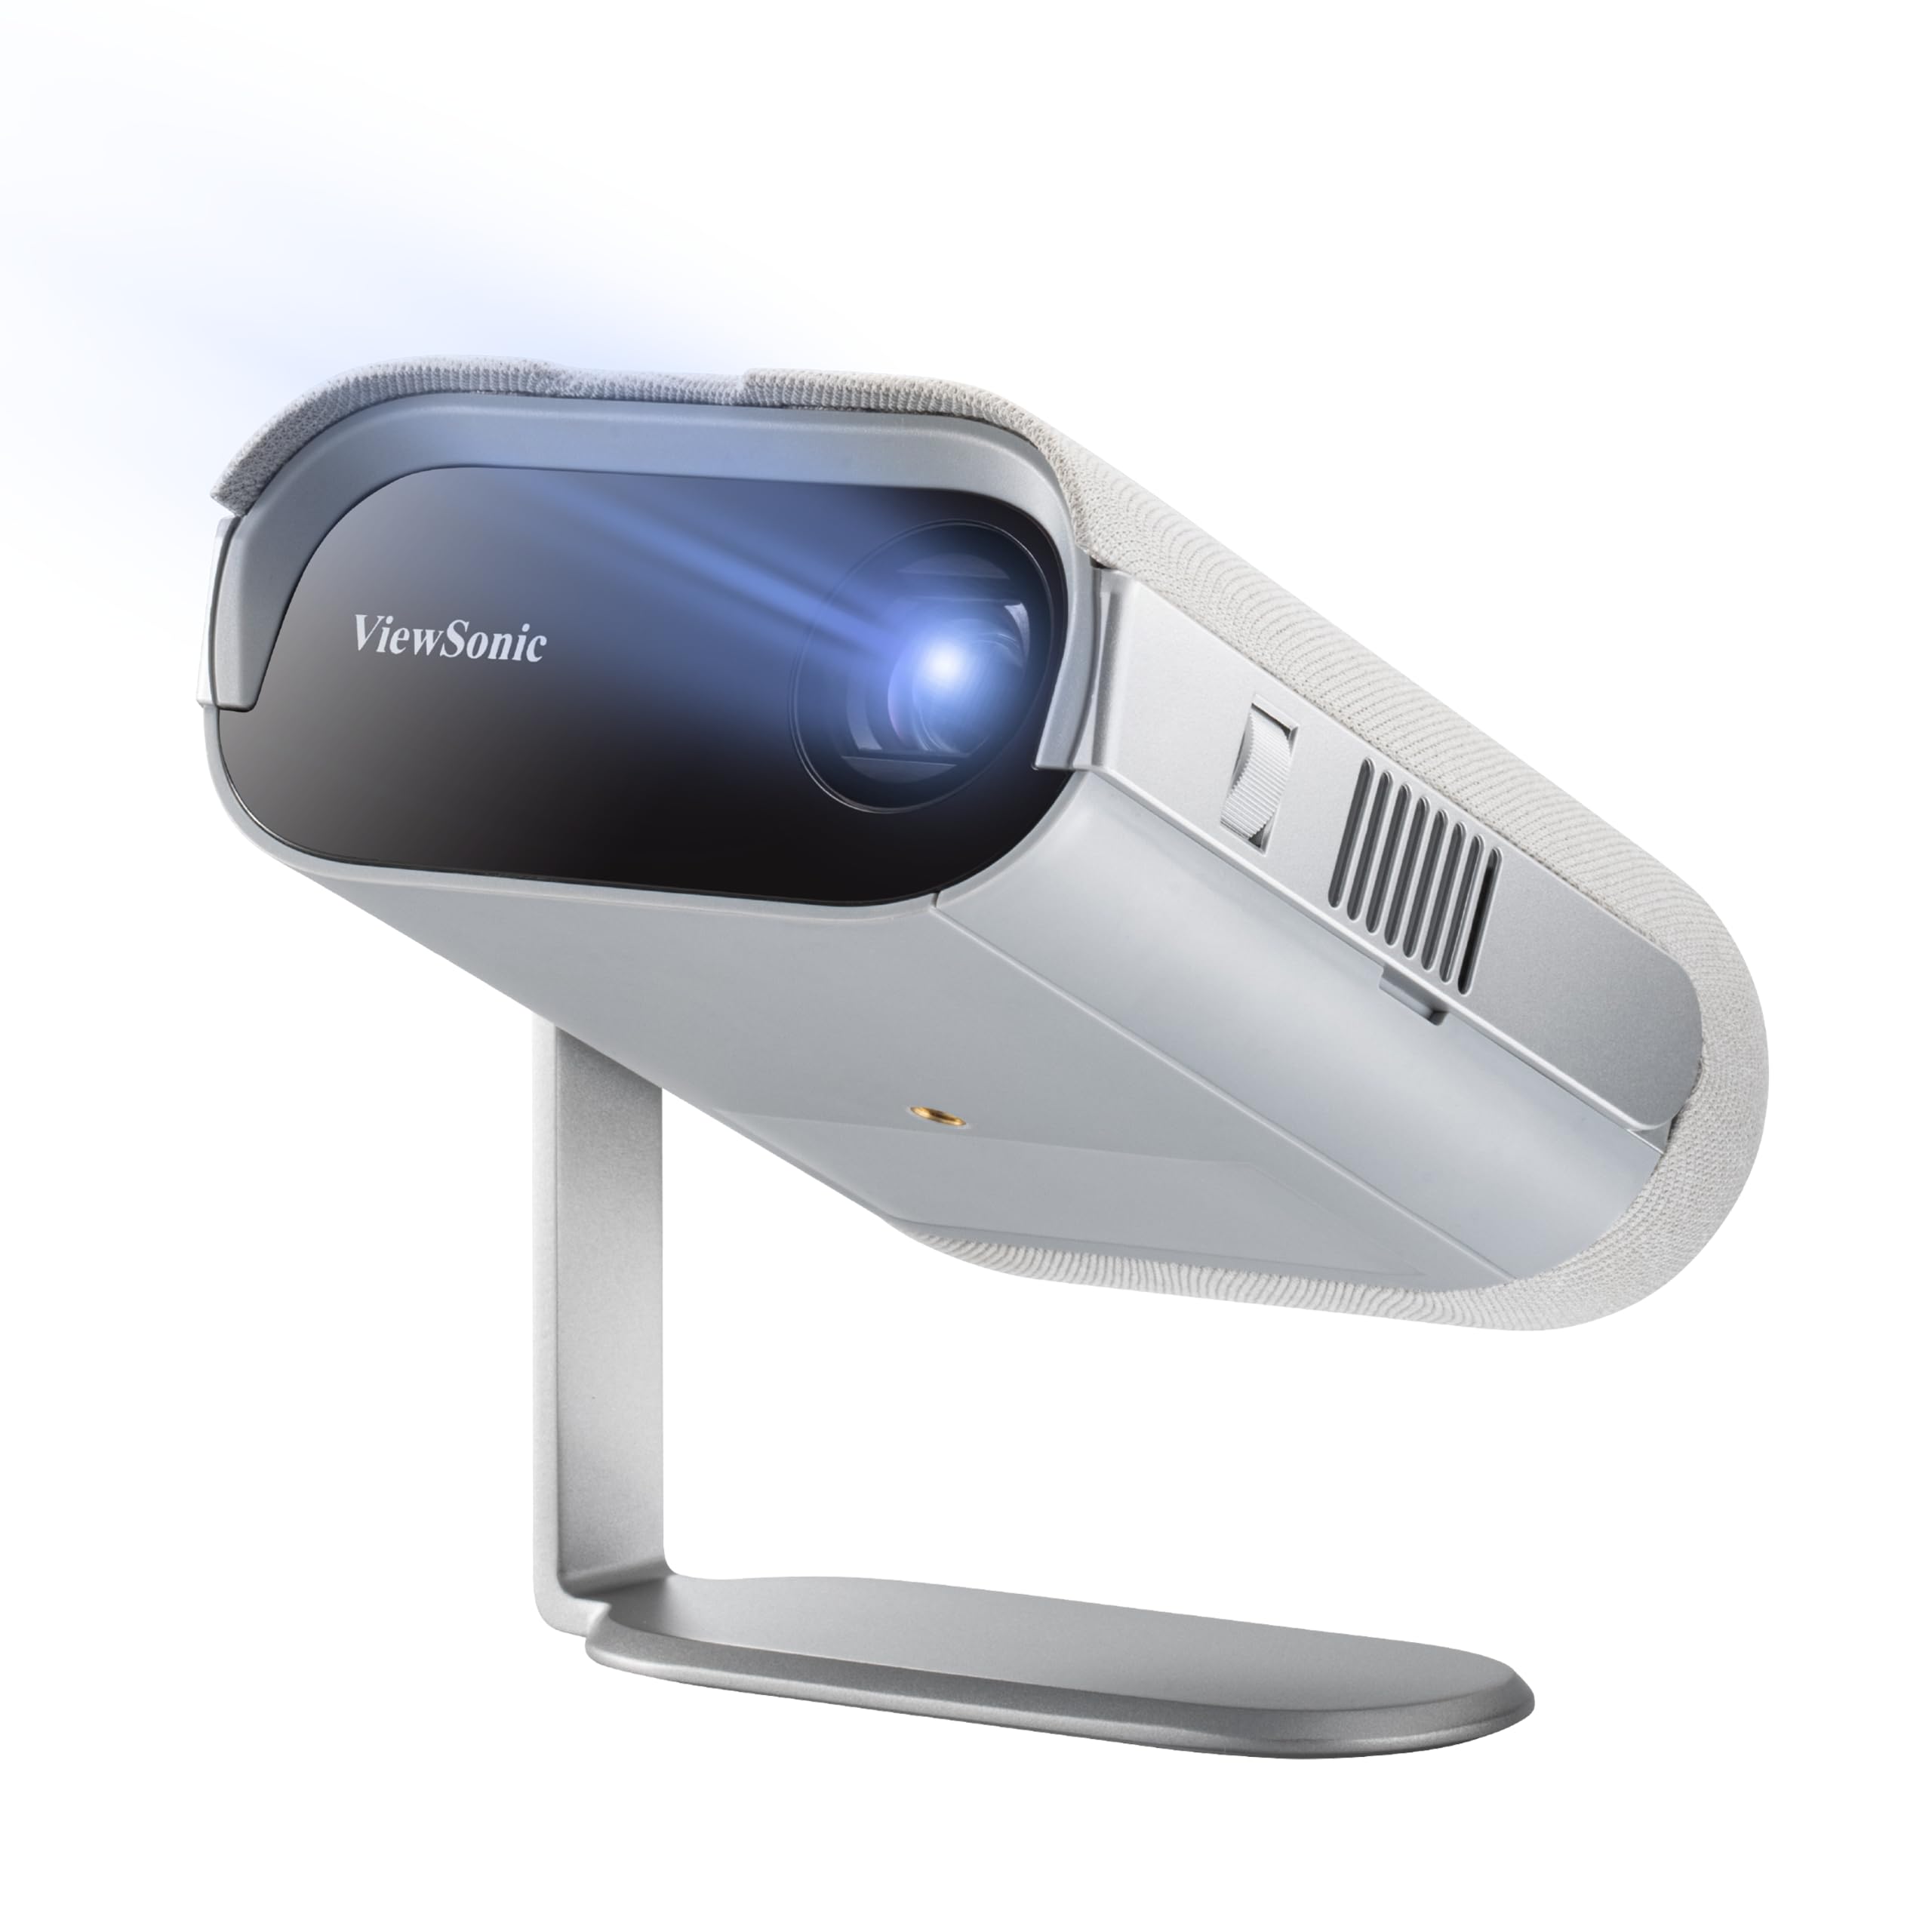 ViewSonic M1 Pro Portabler LED Beamer (HD, 600 Lumen, integrierter Akku, HDMI, USB, USB-C, WLAN Konnektivität, Bluetooth, SD-Kartenleser, 3 Watt Lautsprecher) grau